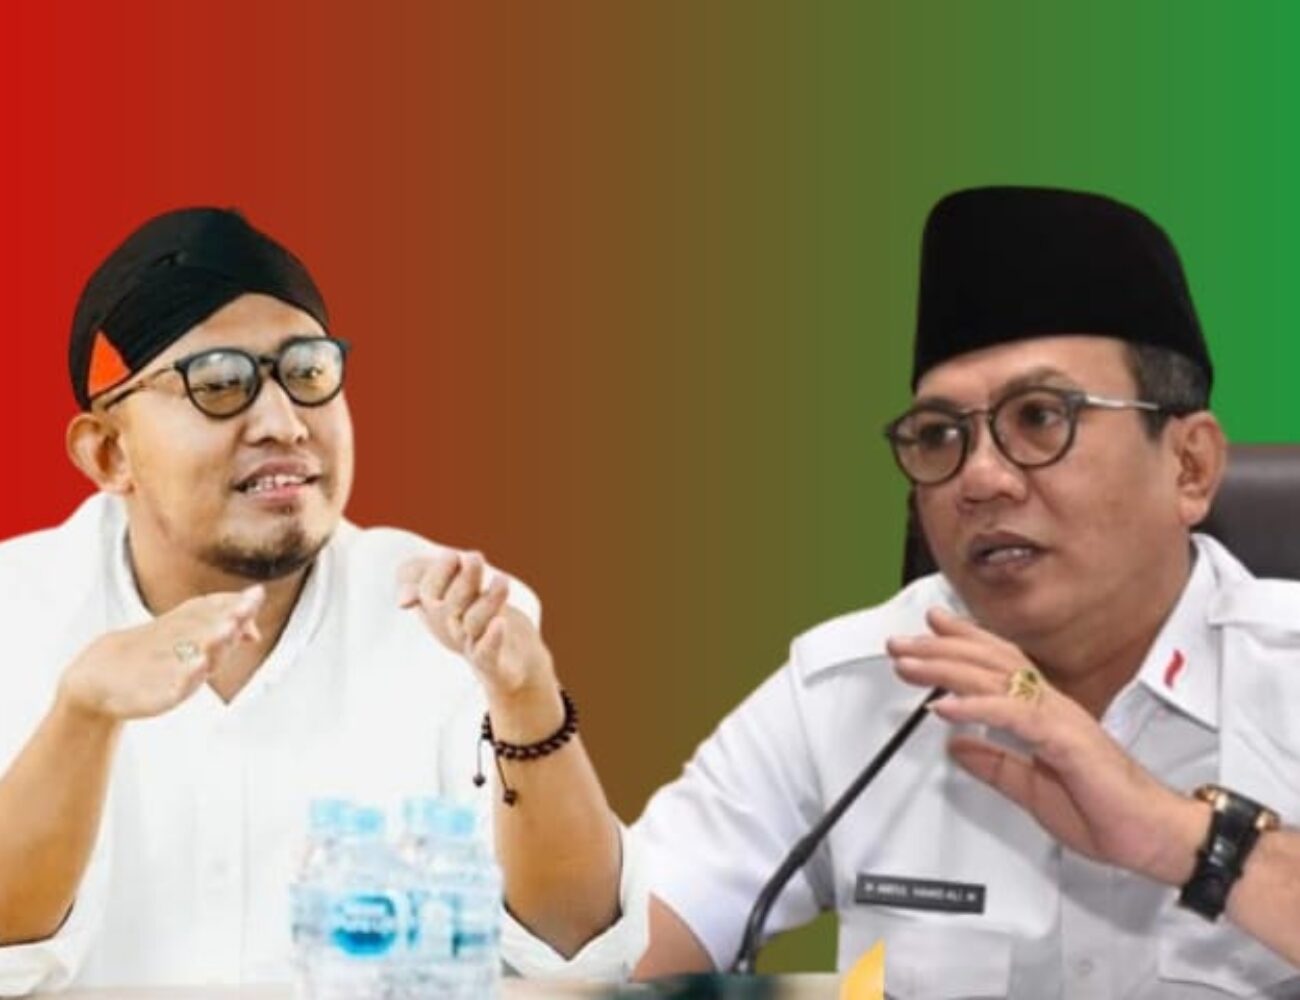 Ketua DPRD Sumenep Nyatakan Siap Bila Harus Duet dengan Achmad Fauzi di Pilkada Mendatang